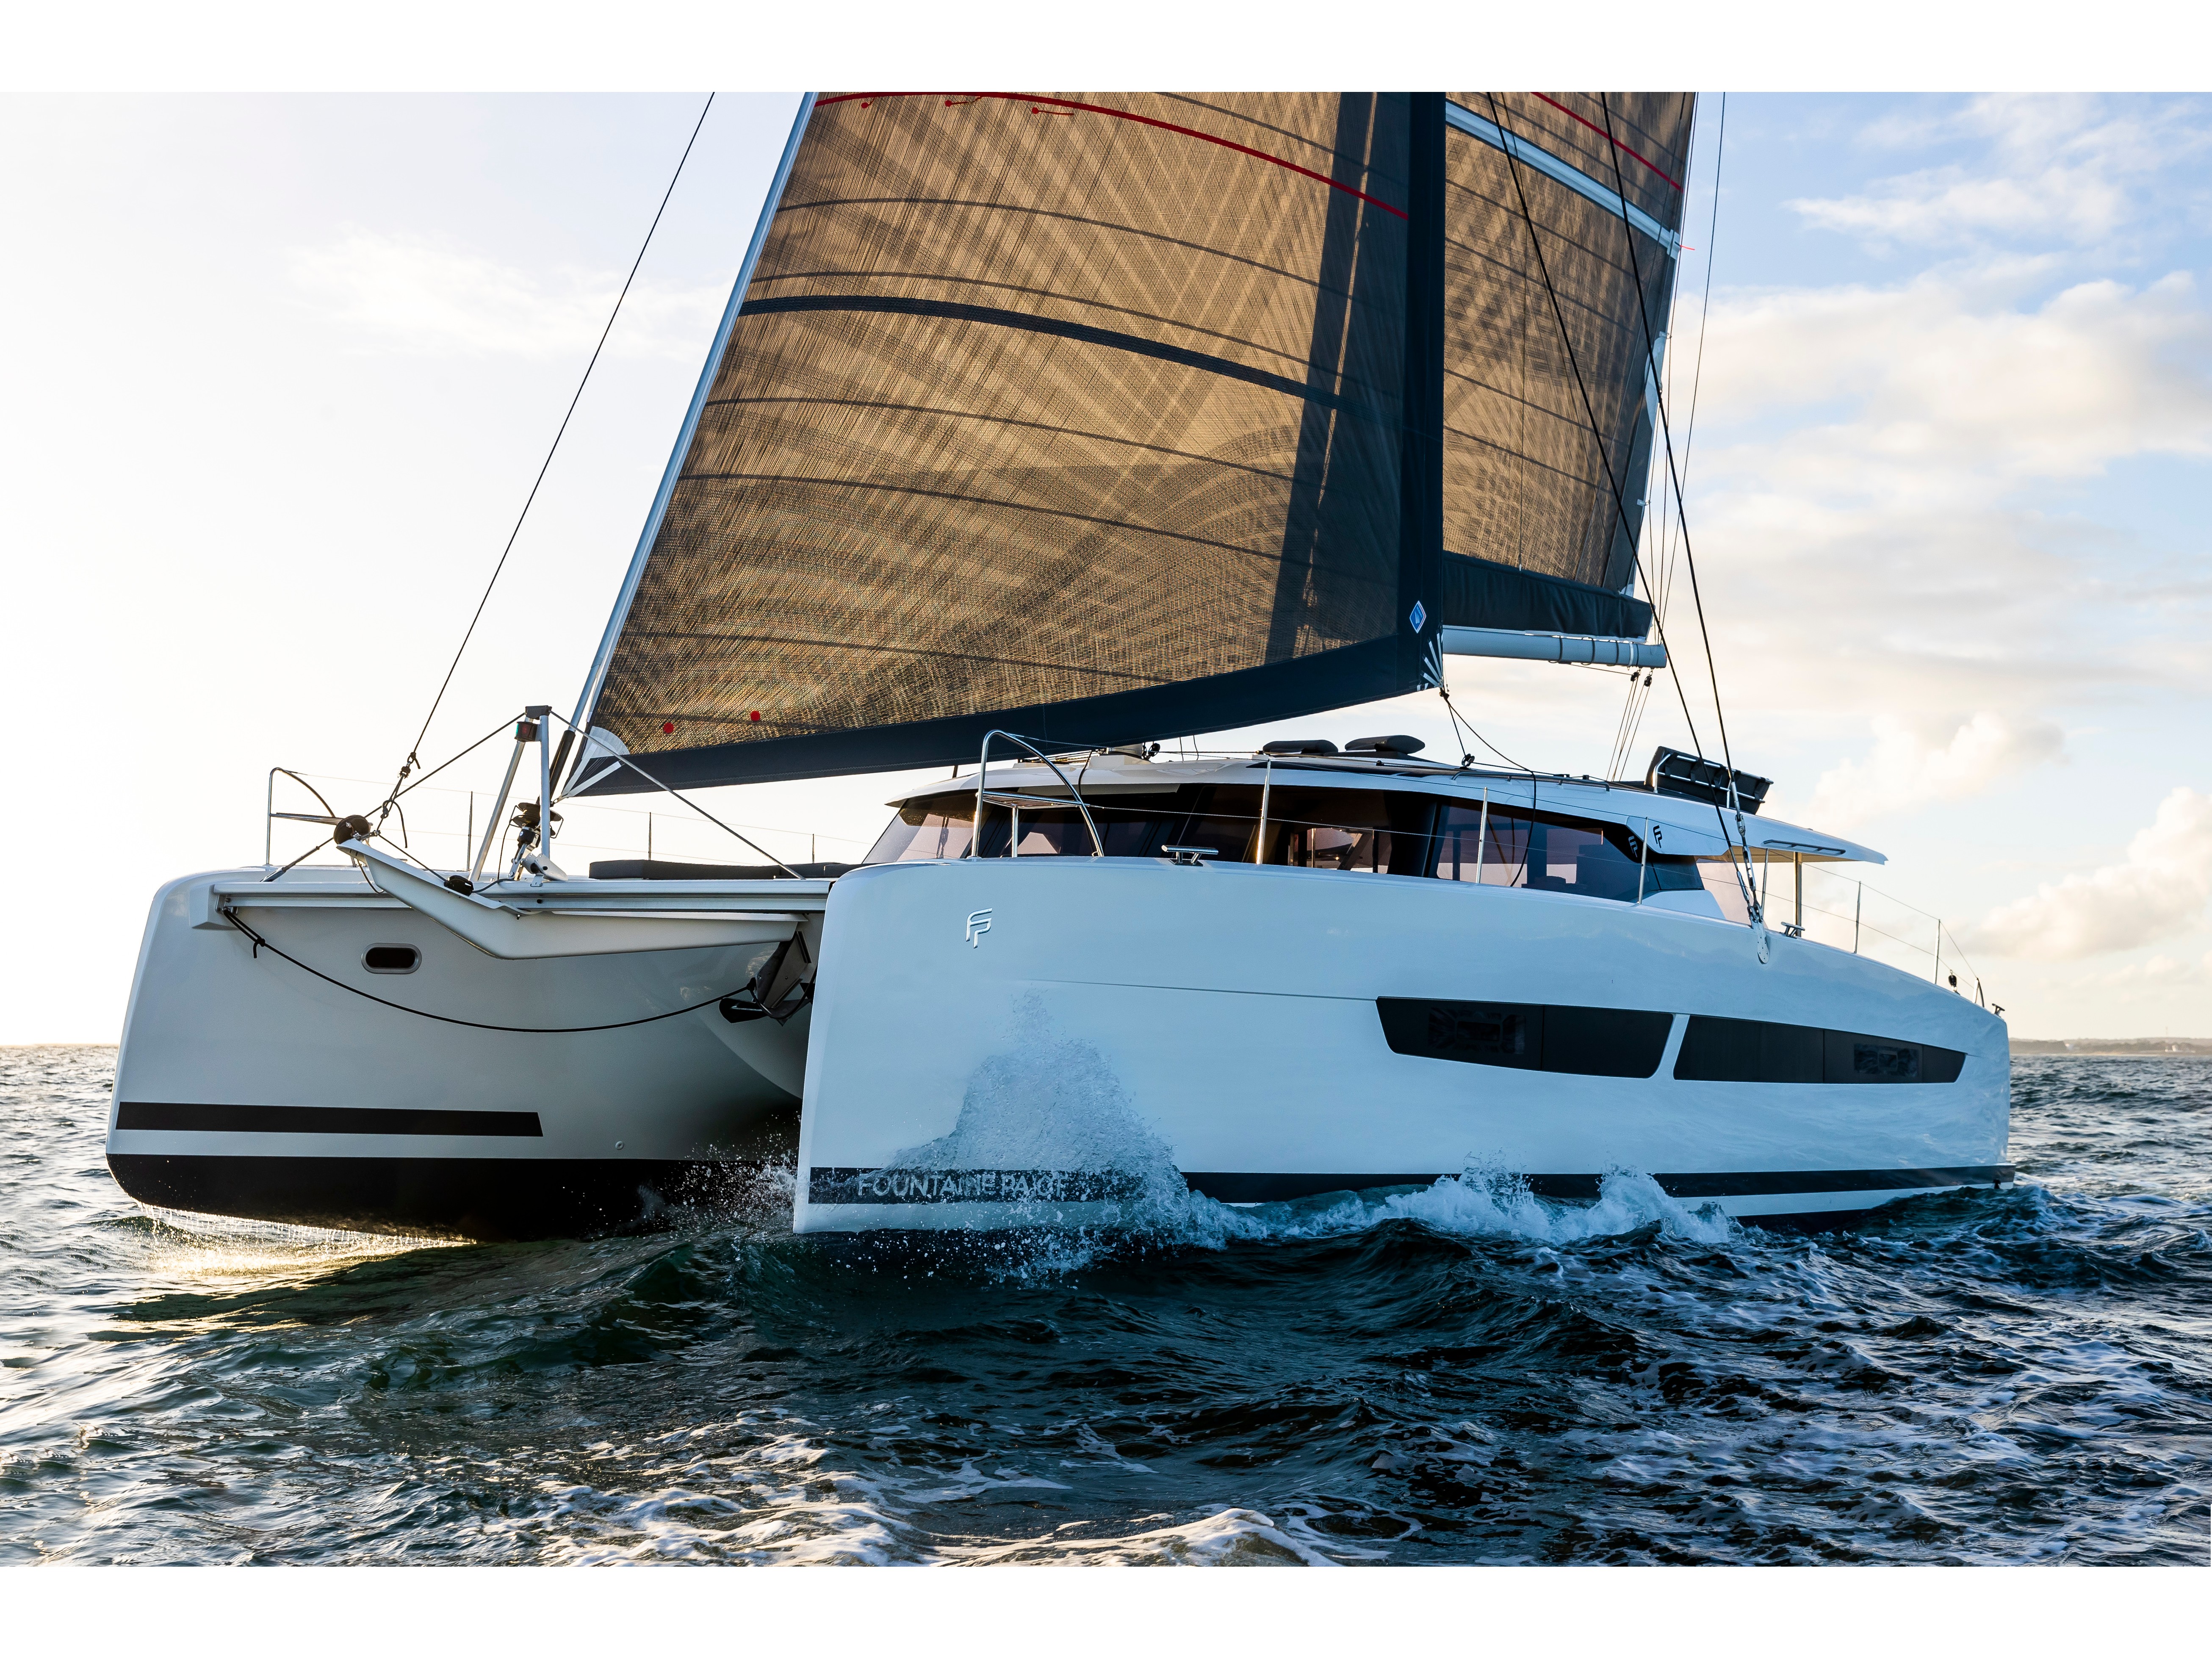 Aura 51 - Luxury yacht charter Sicily & Boat hire in Italy Sicily Aeolian Islands Capo d'Orlando Capo d'Orlando Marina 3